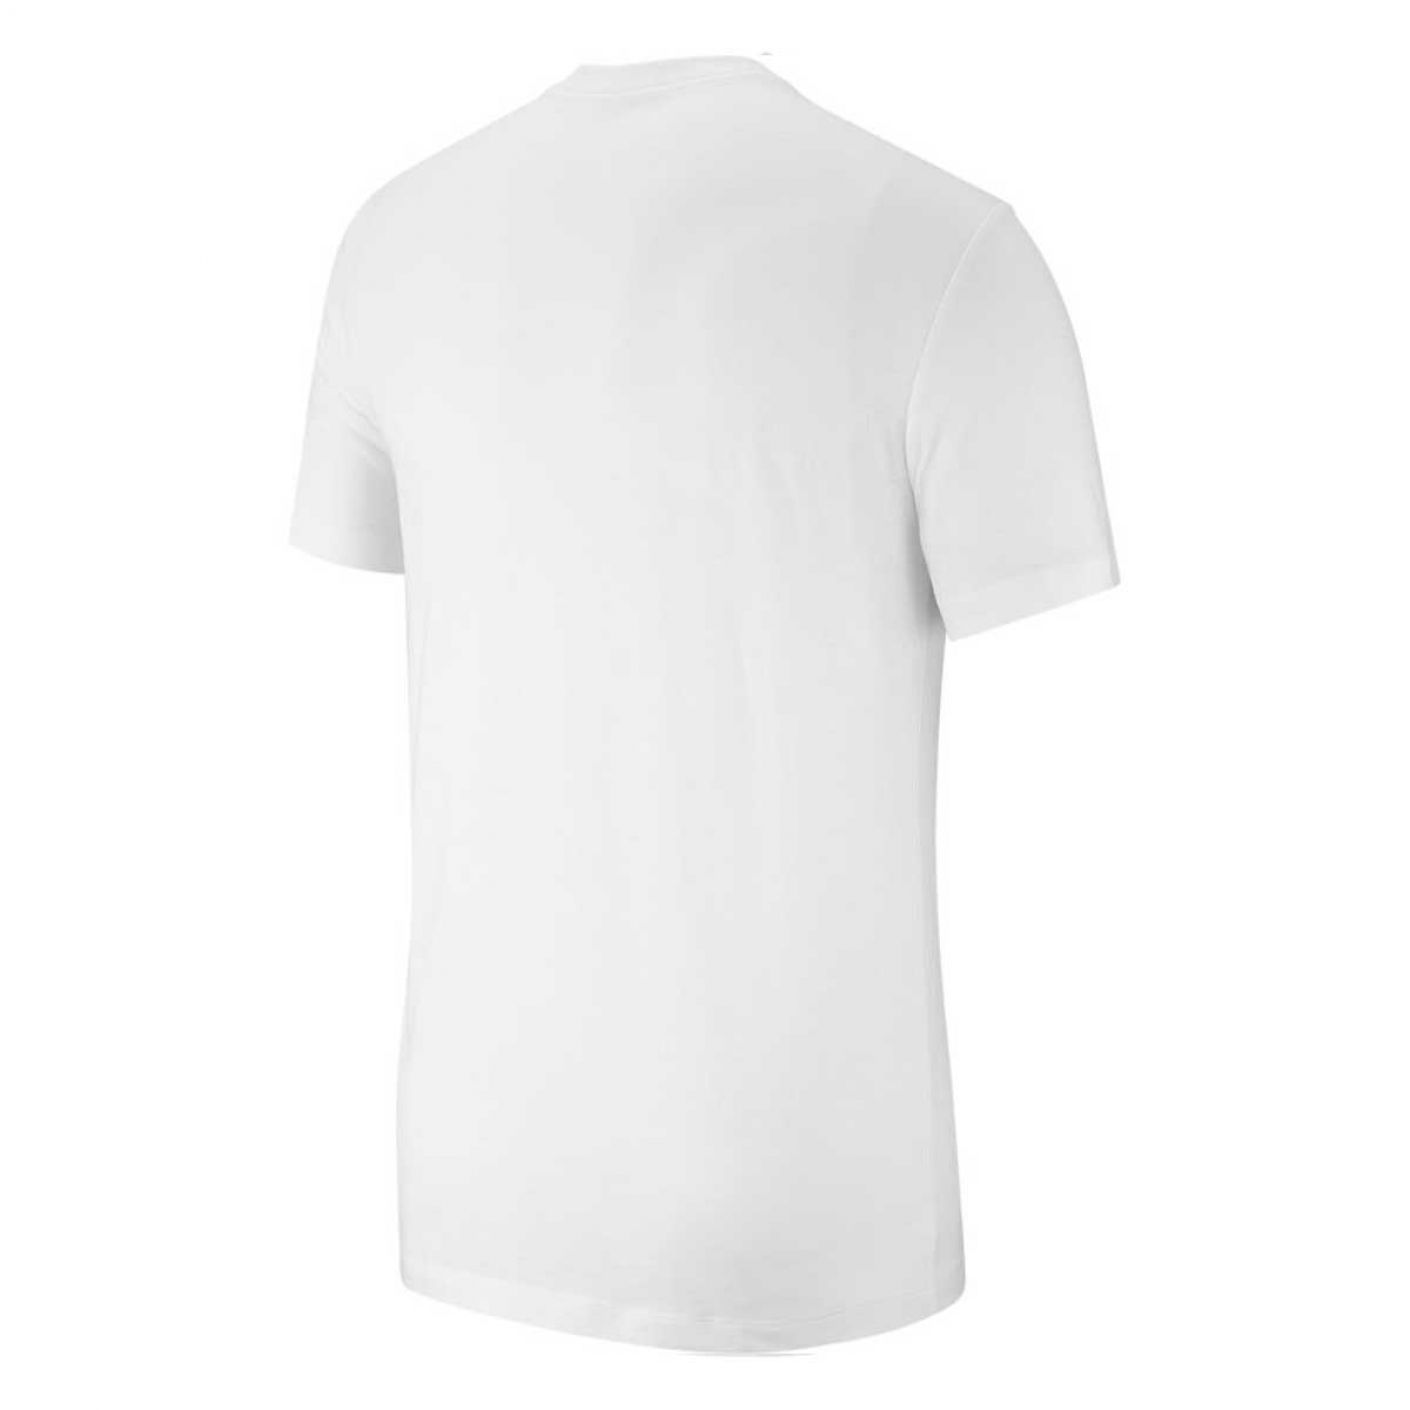 Nike Men's Sportswear Jersey White T-Shirt